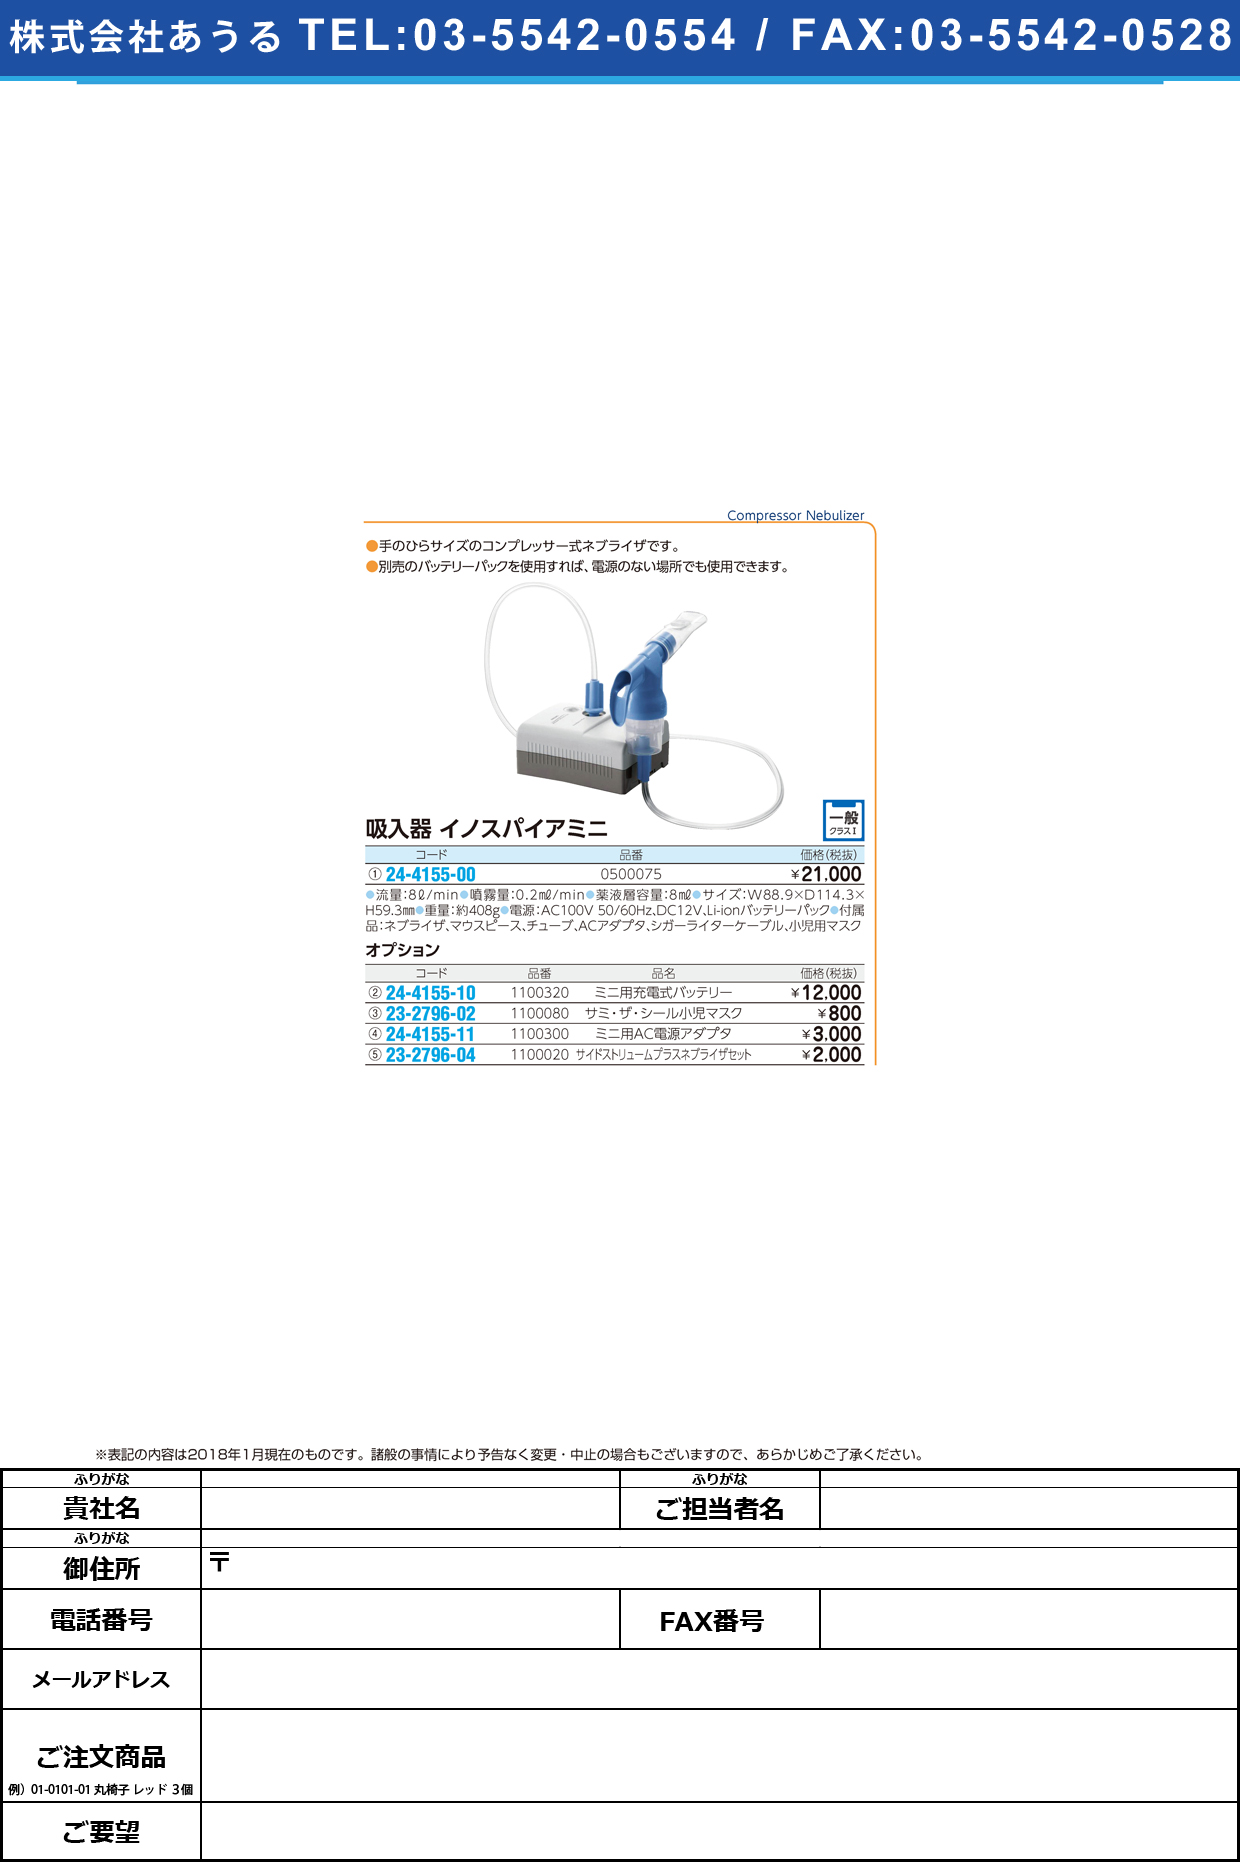 (23-2796-04)サイドストリュームネブライザーセット 1100020 ｻｲﾄﾞｽﾄﾘｭｰﾑﾈﾌﾞﾗｲｻﾞｰｾｯ【1個単位】【2019年カタログ商品】